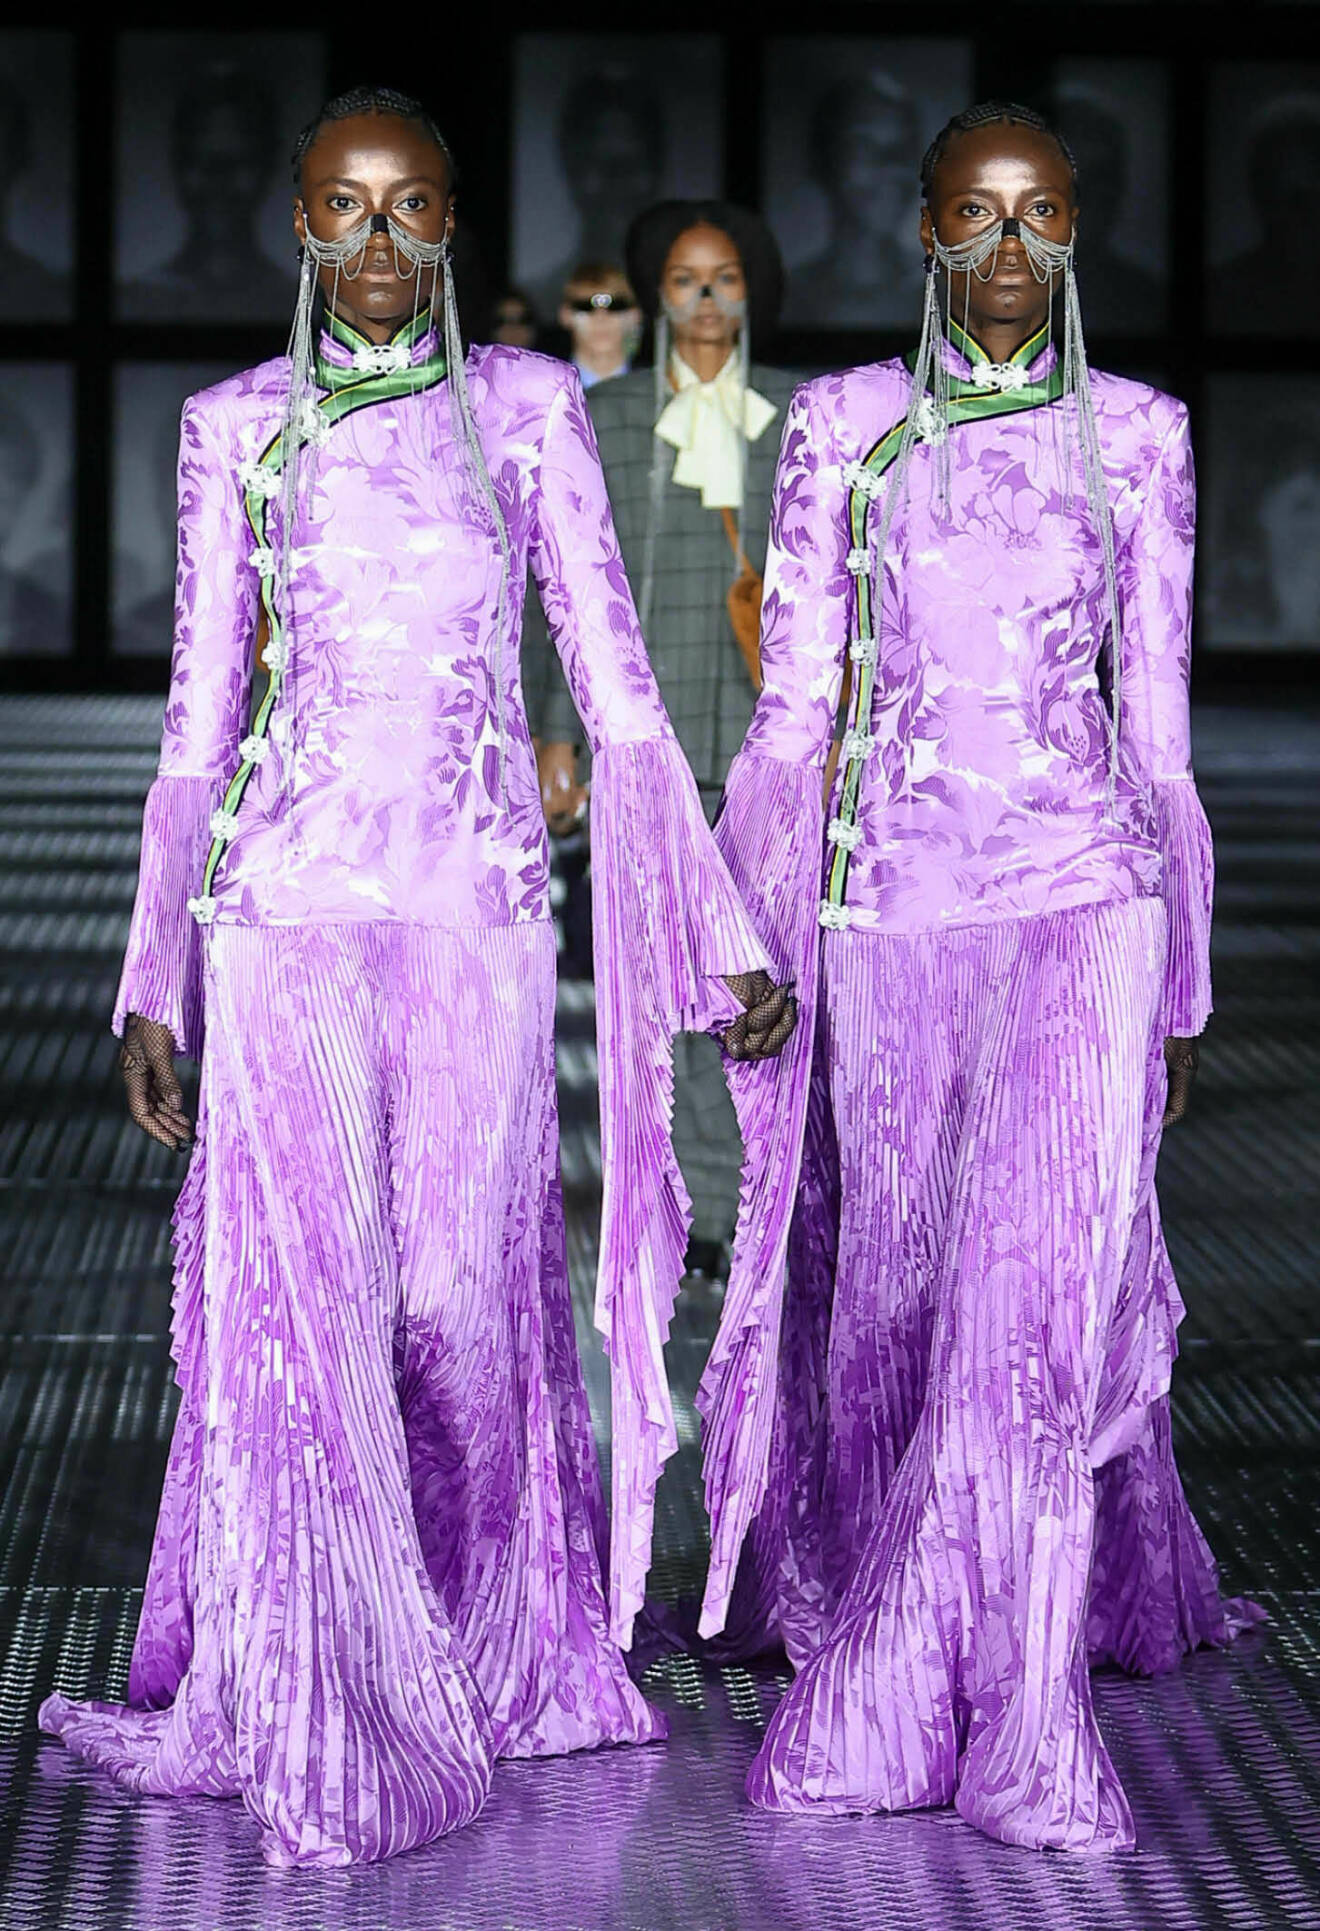 Guccis SS23-visning med tvillingar på Milano Fashion Week